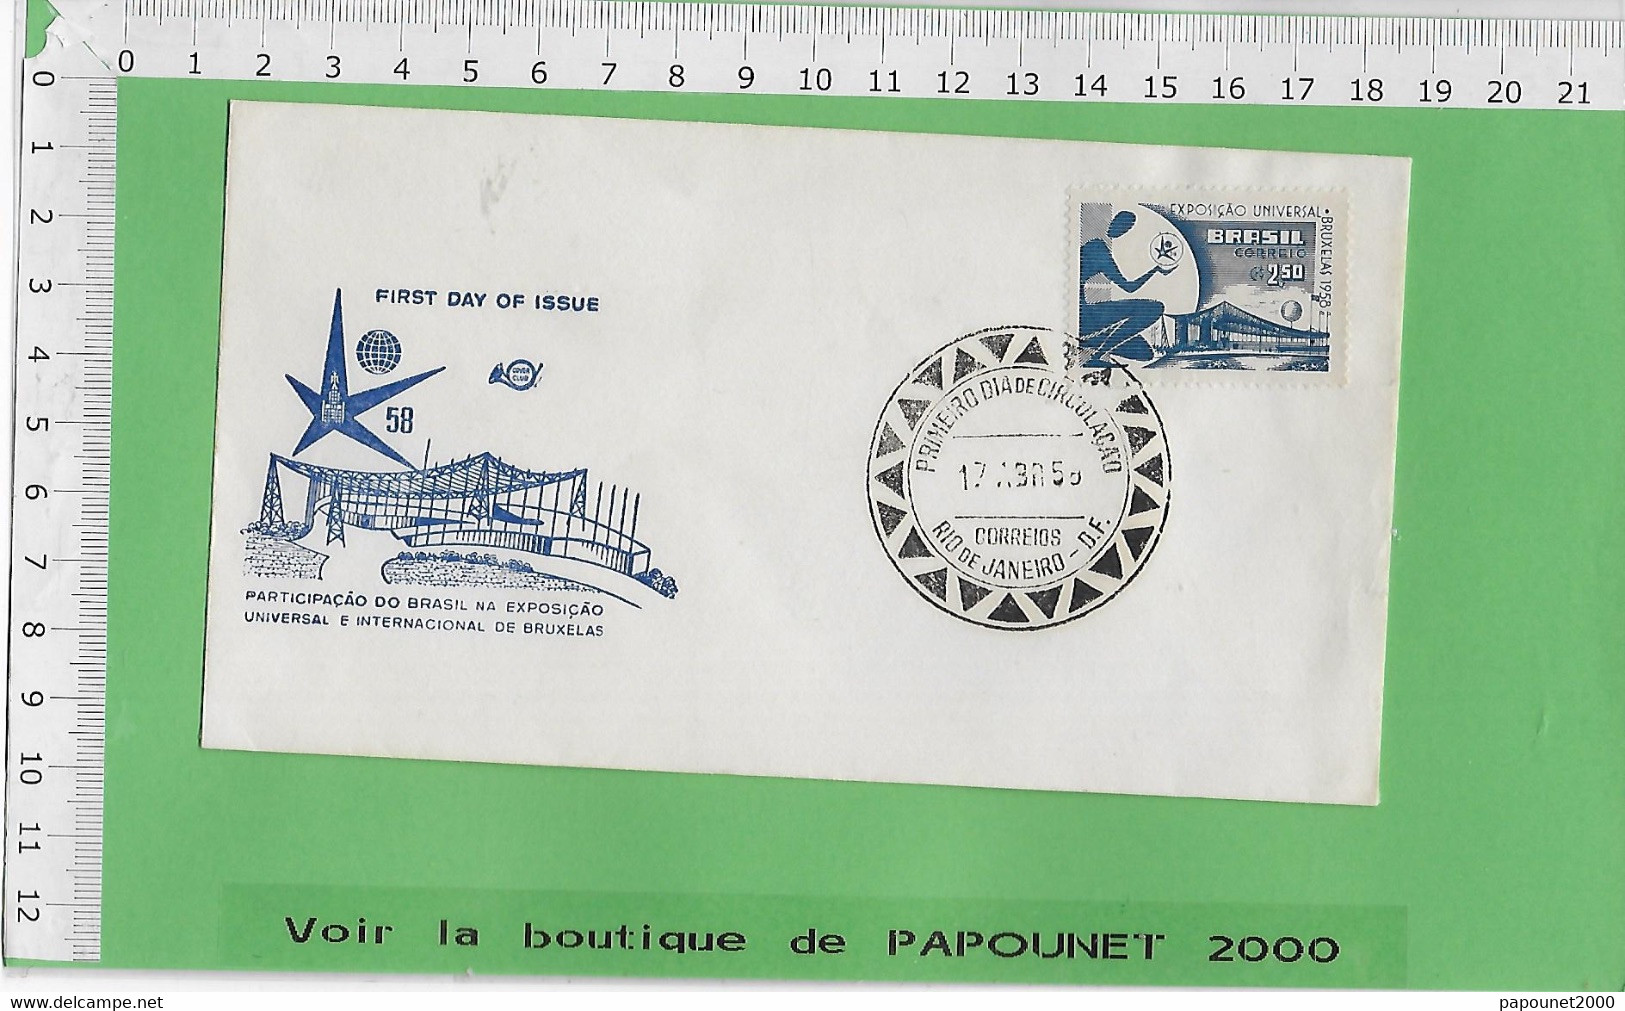 02581 - E BE04 1000-EXPO 58 : Timbre*Enveloppe /  PAVILLON DU BRESIL - 1958 – Brussels (Belgium)